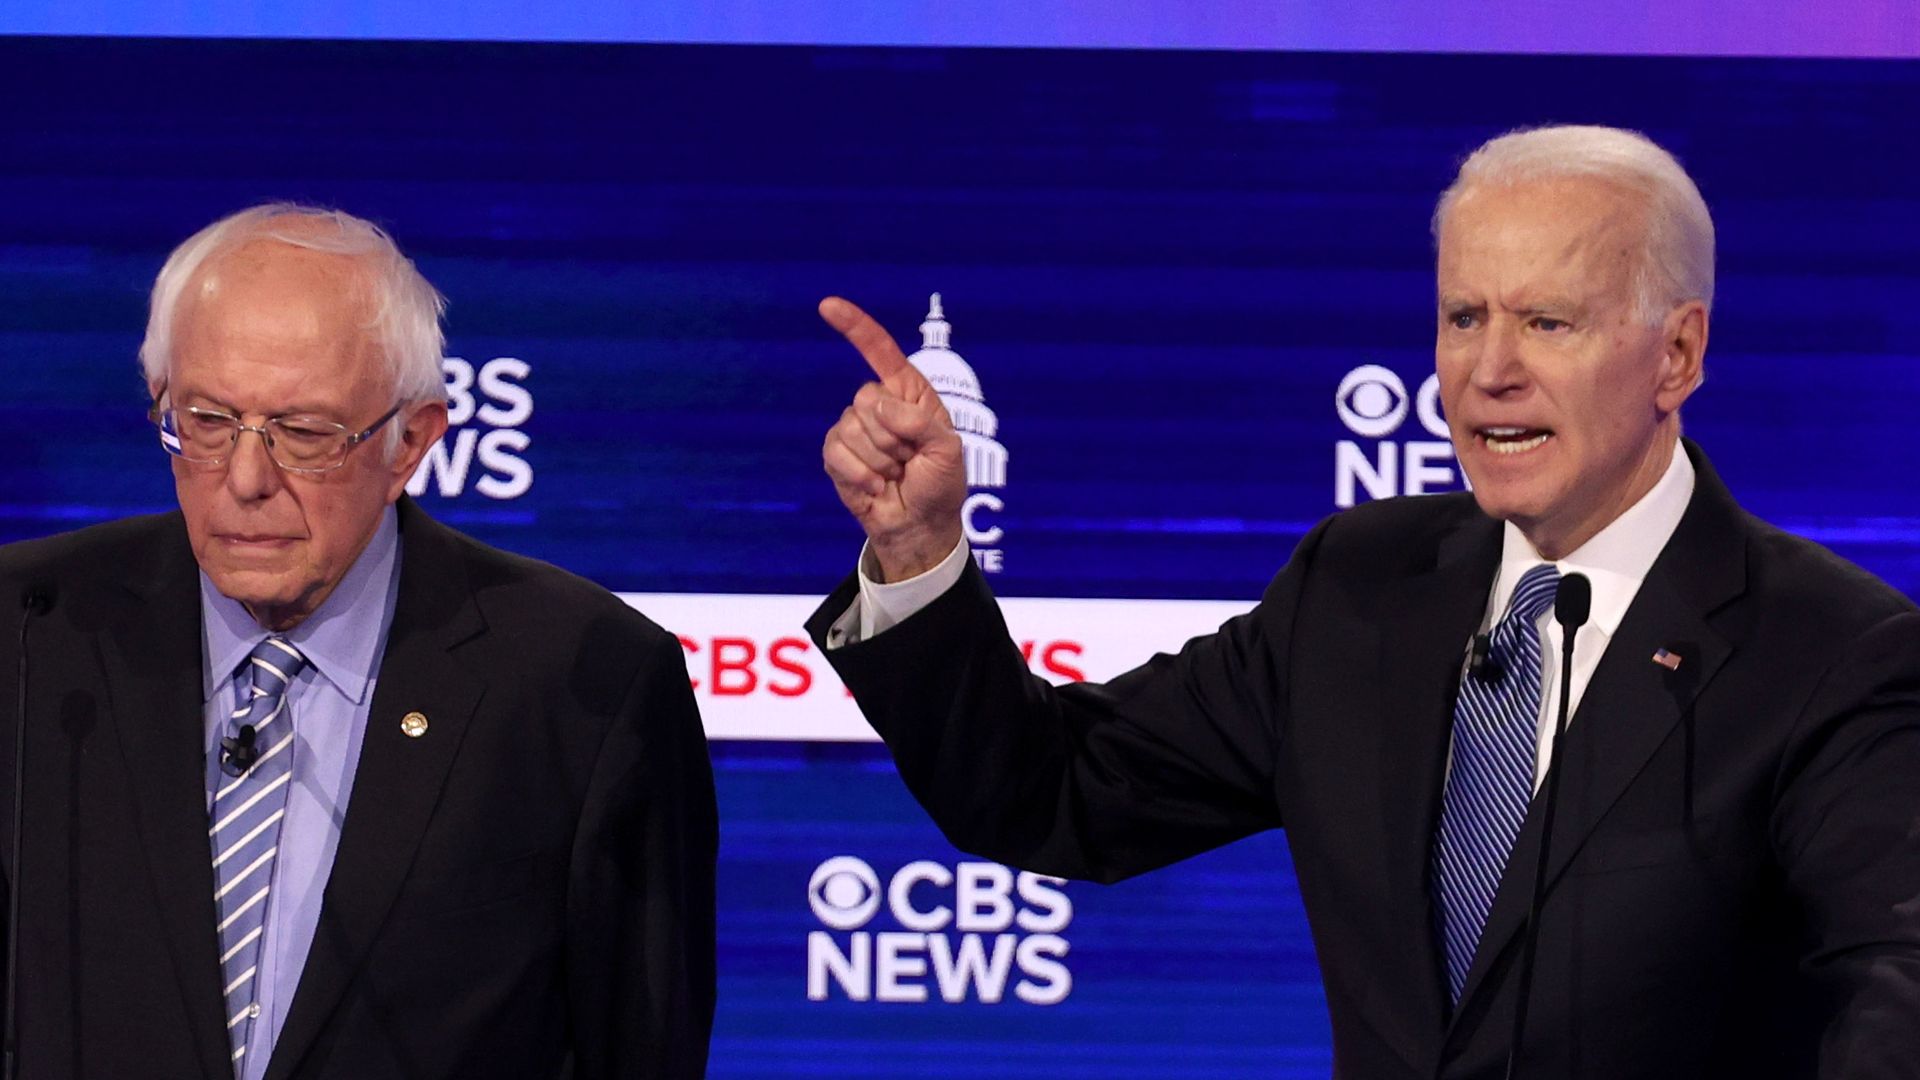 Joe Biden gesturing during a Democratic debate, with Bernie Sanders to his right